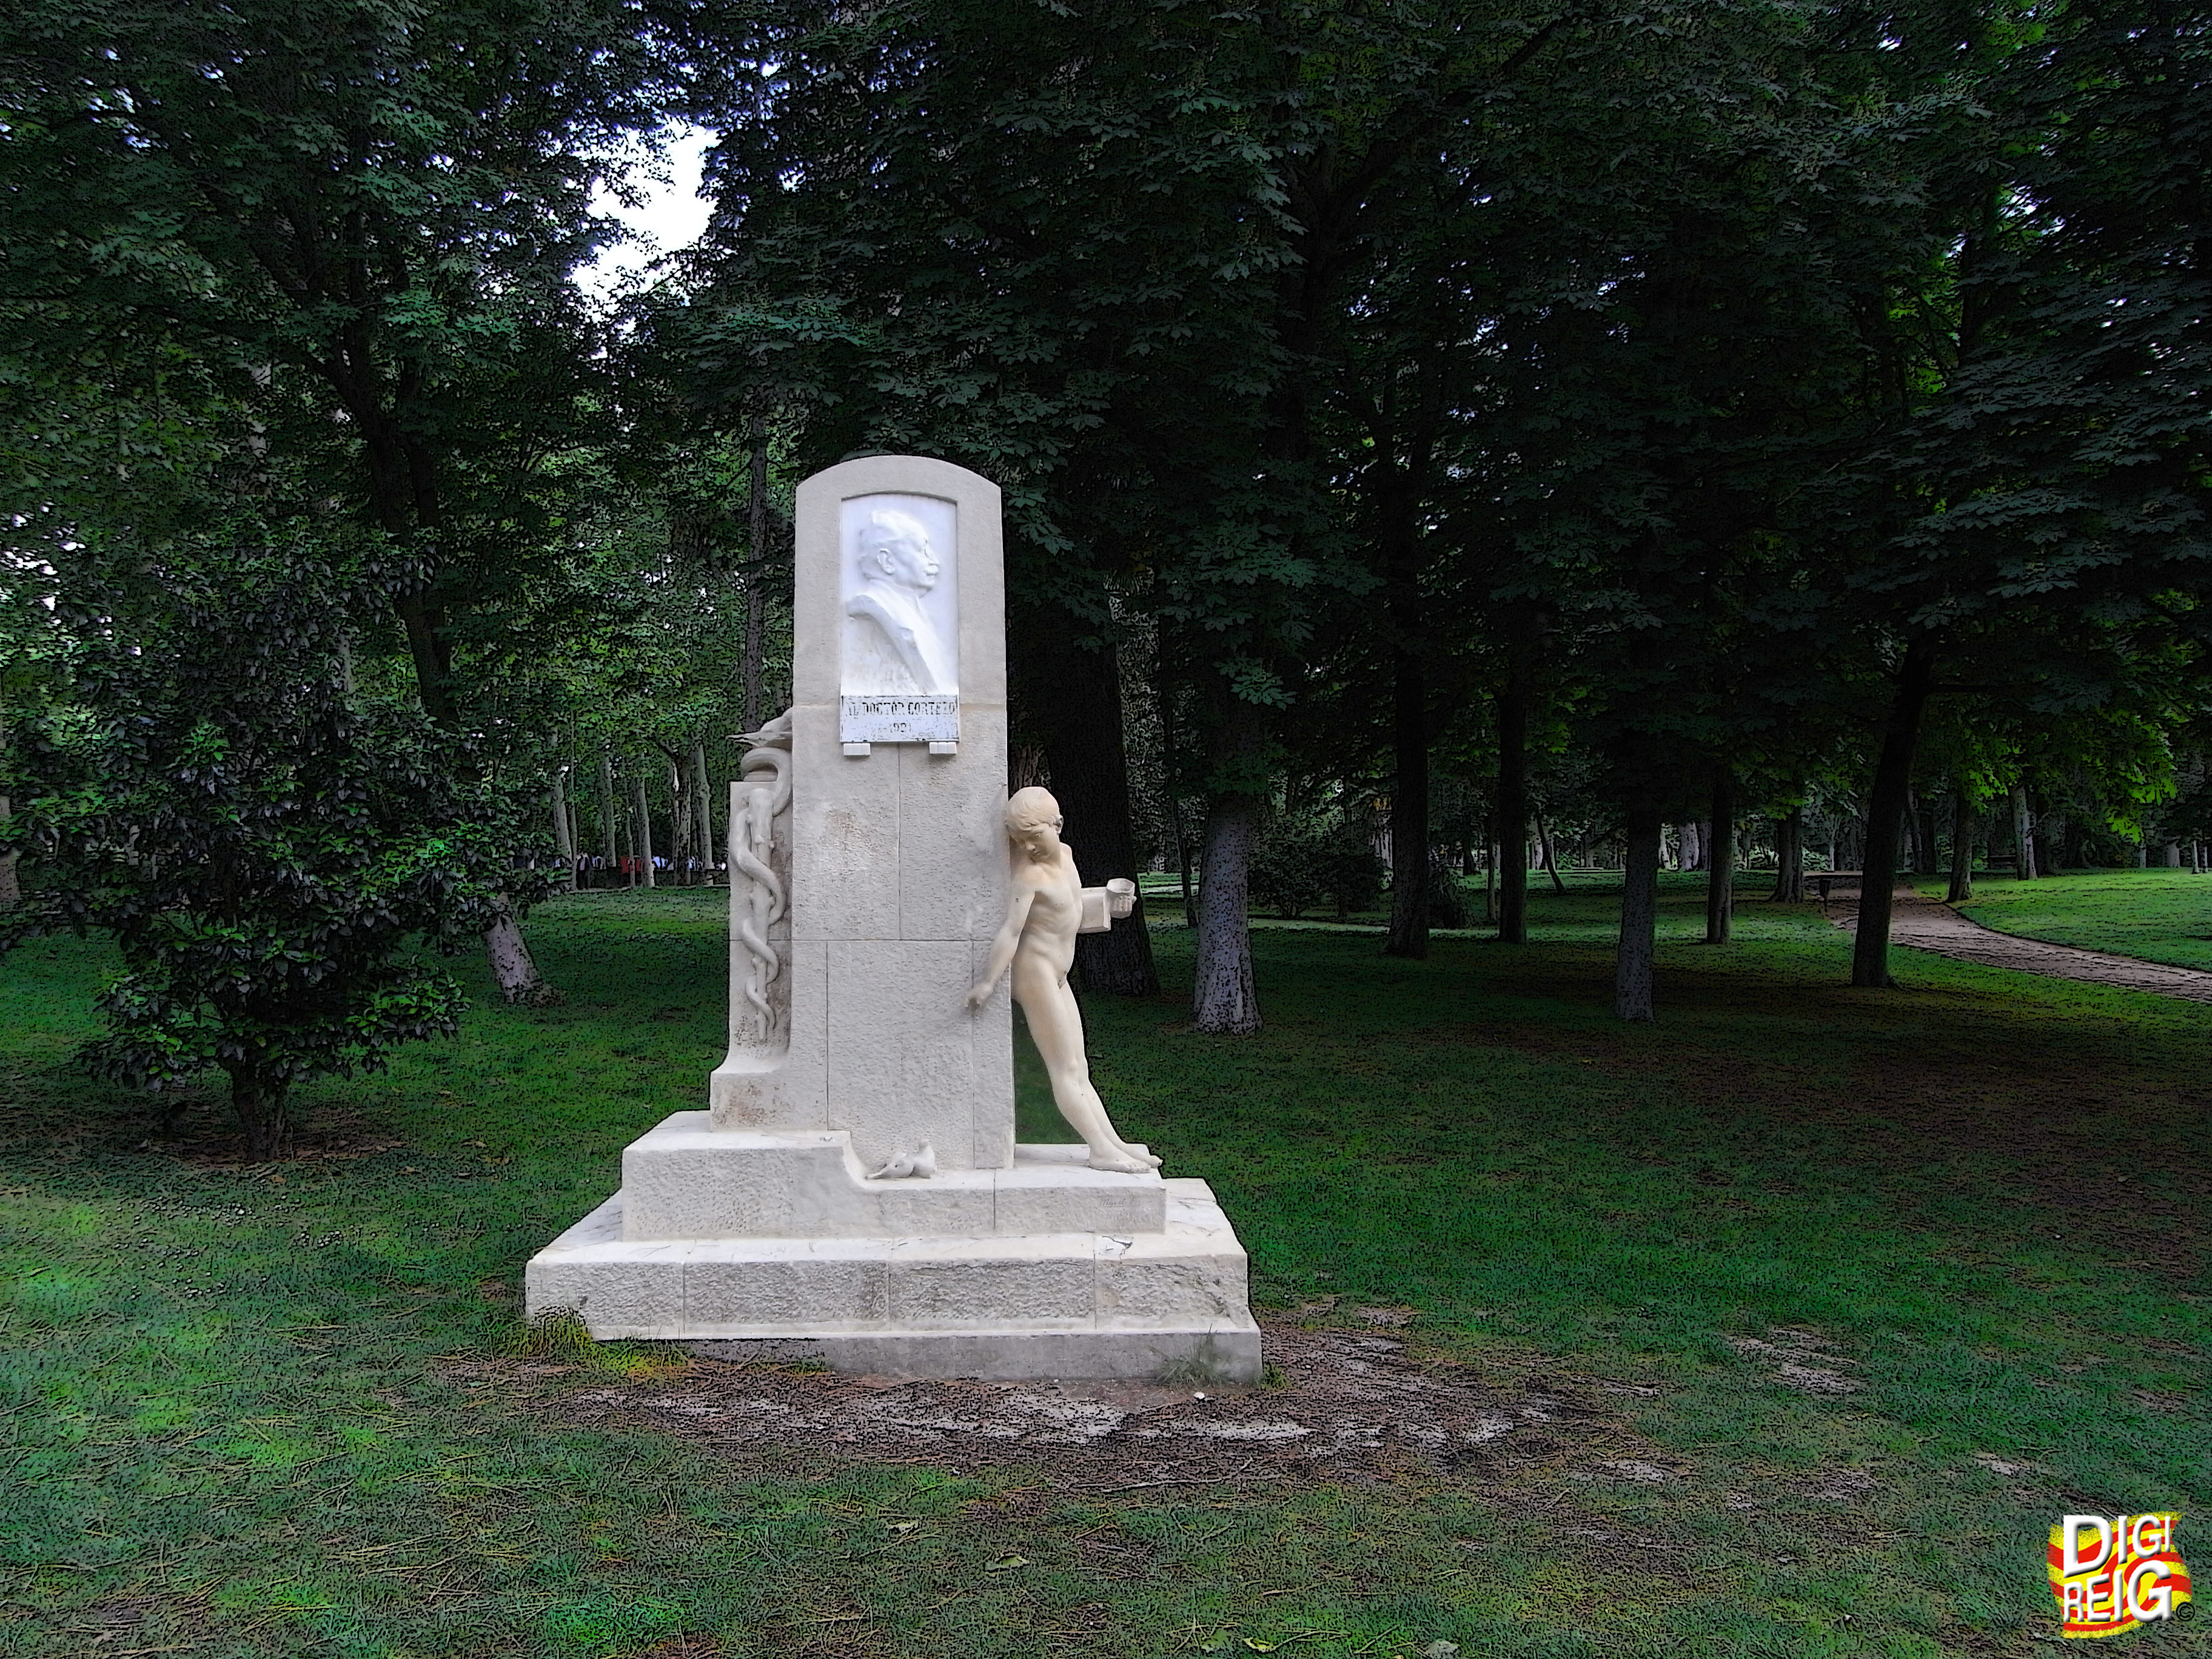 Foto: Monumento al Dr. Cortezo-Parque del Retiro. - Madrid (Comunidad de Madrid), España